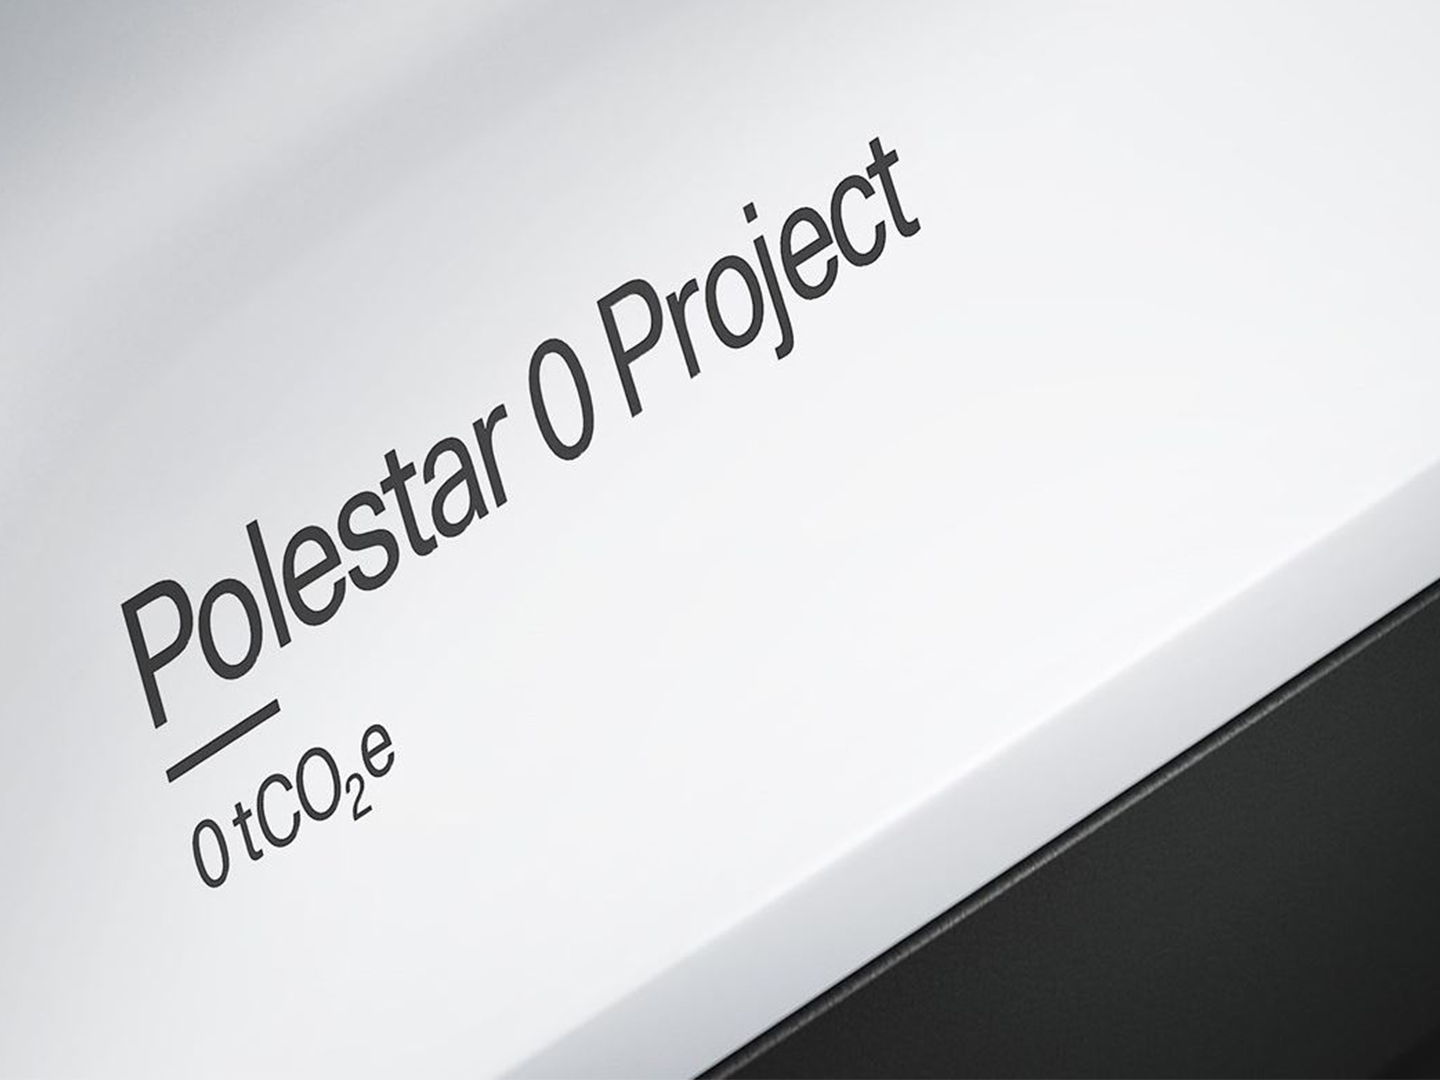 Polestar 0 Projekt: Polestar vervierfacht Anzahl der Kooperationspartner, um gemeinsam ein klimaneutrales Fahrzeug zu entwickeln